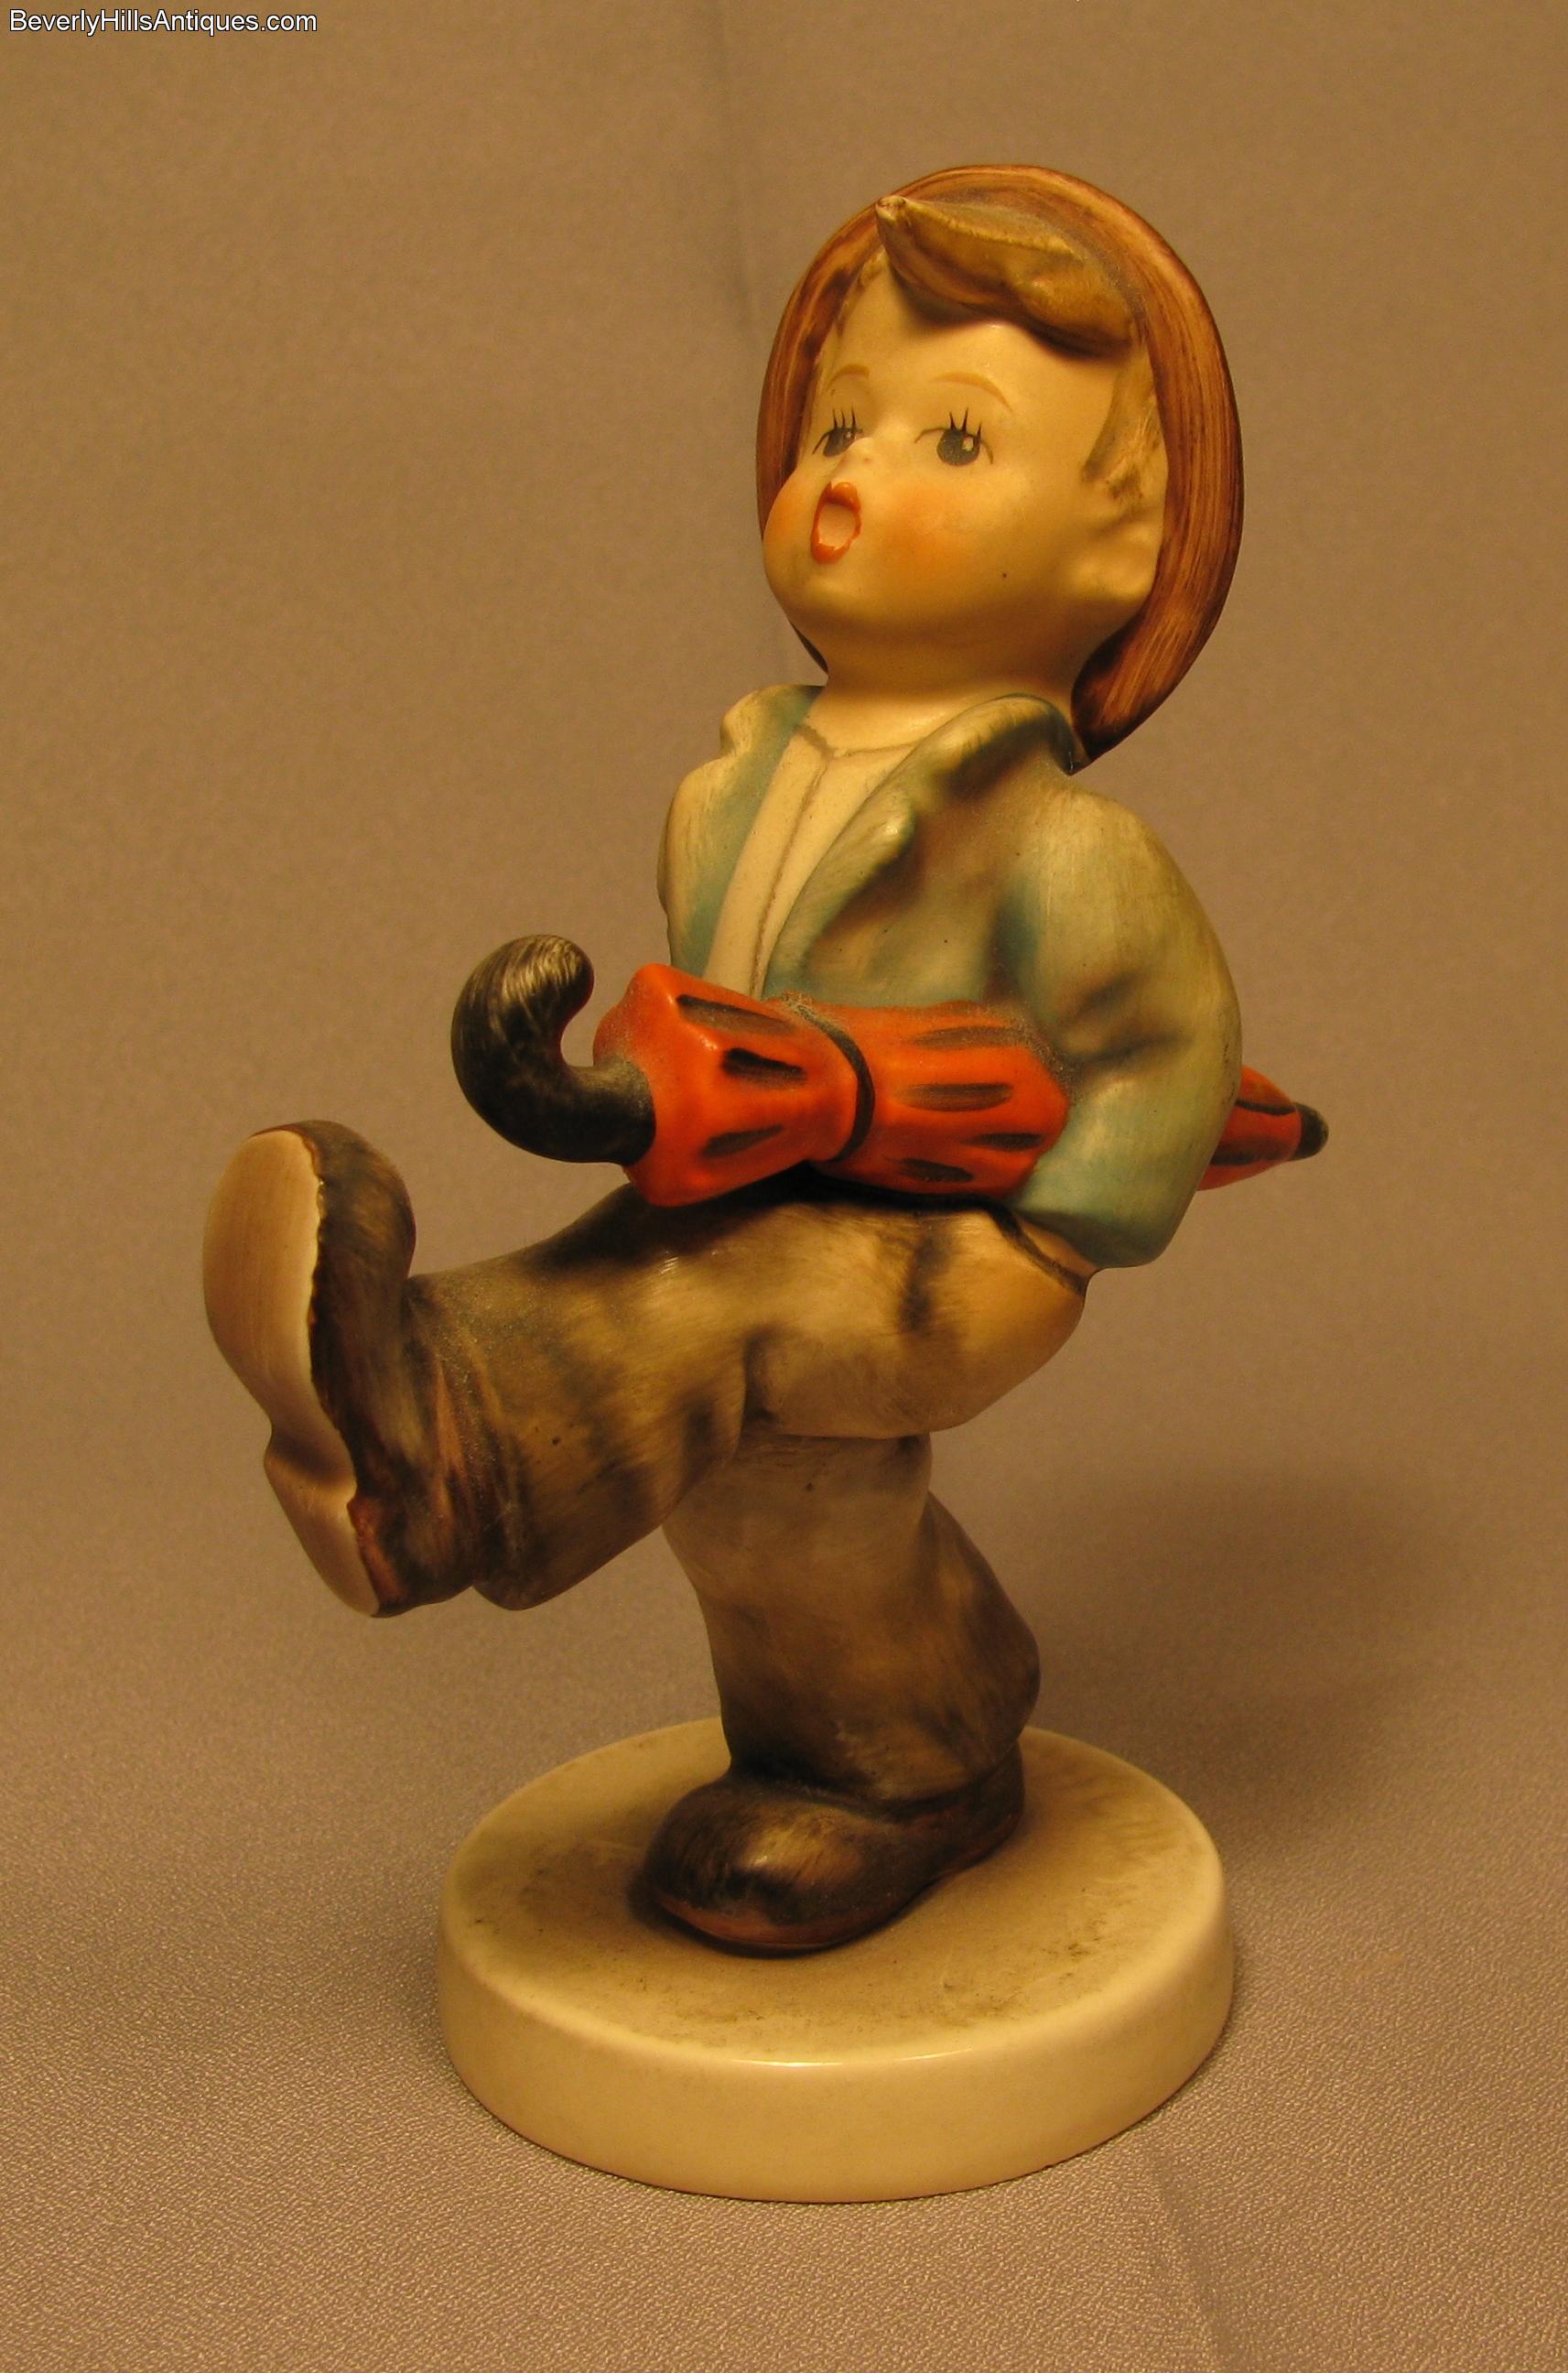 Antique Figurines Value | Best 2000+ Antique decor ideas